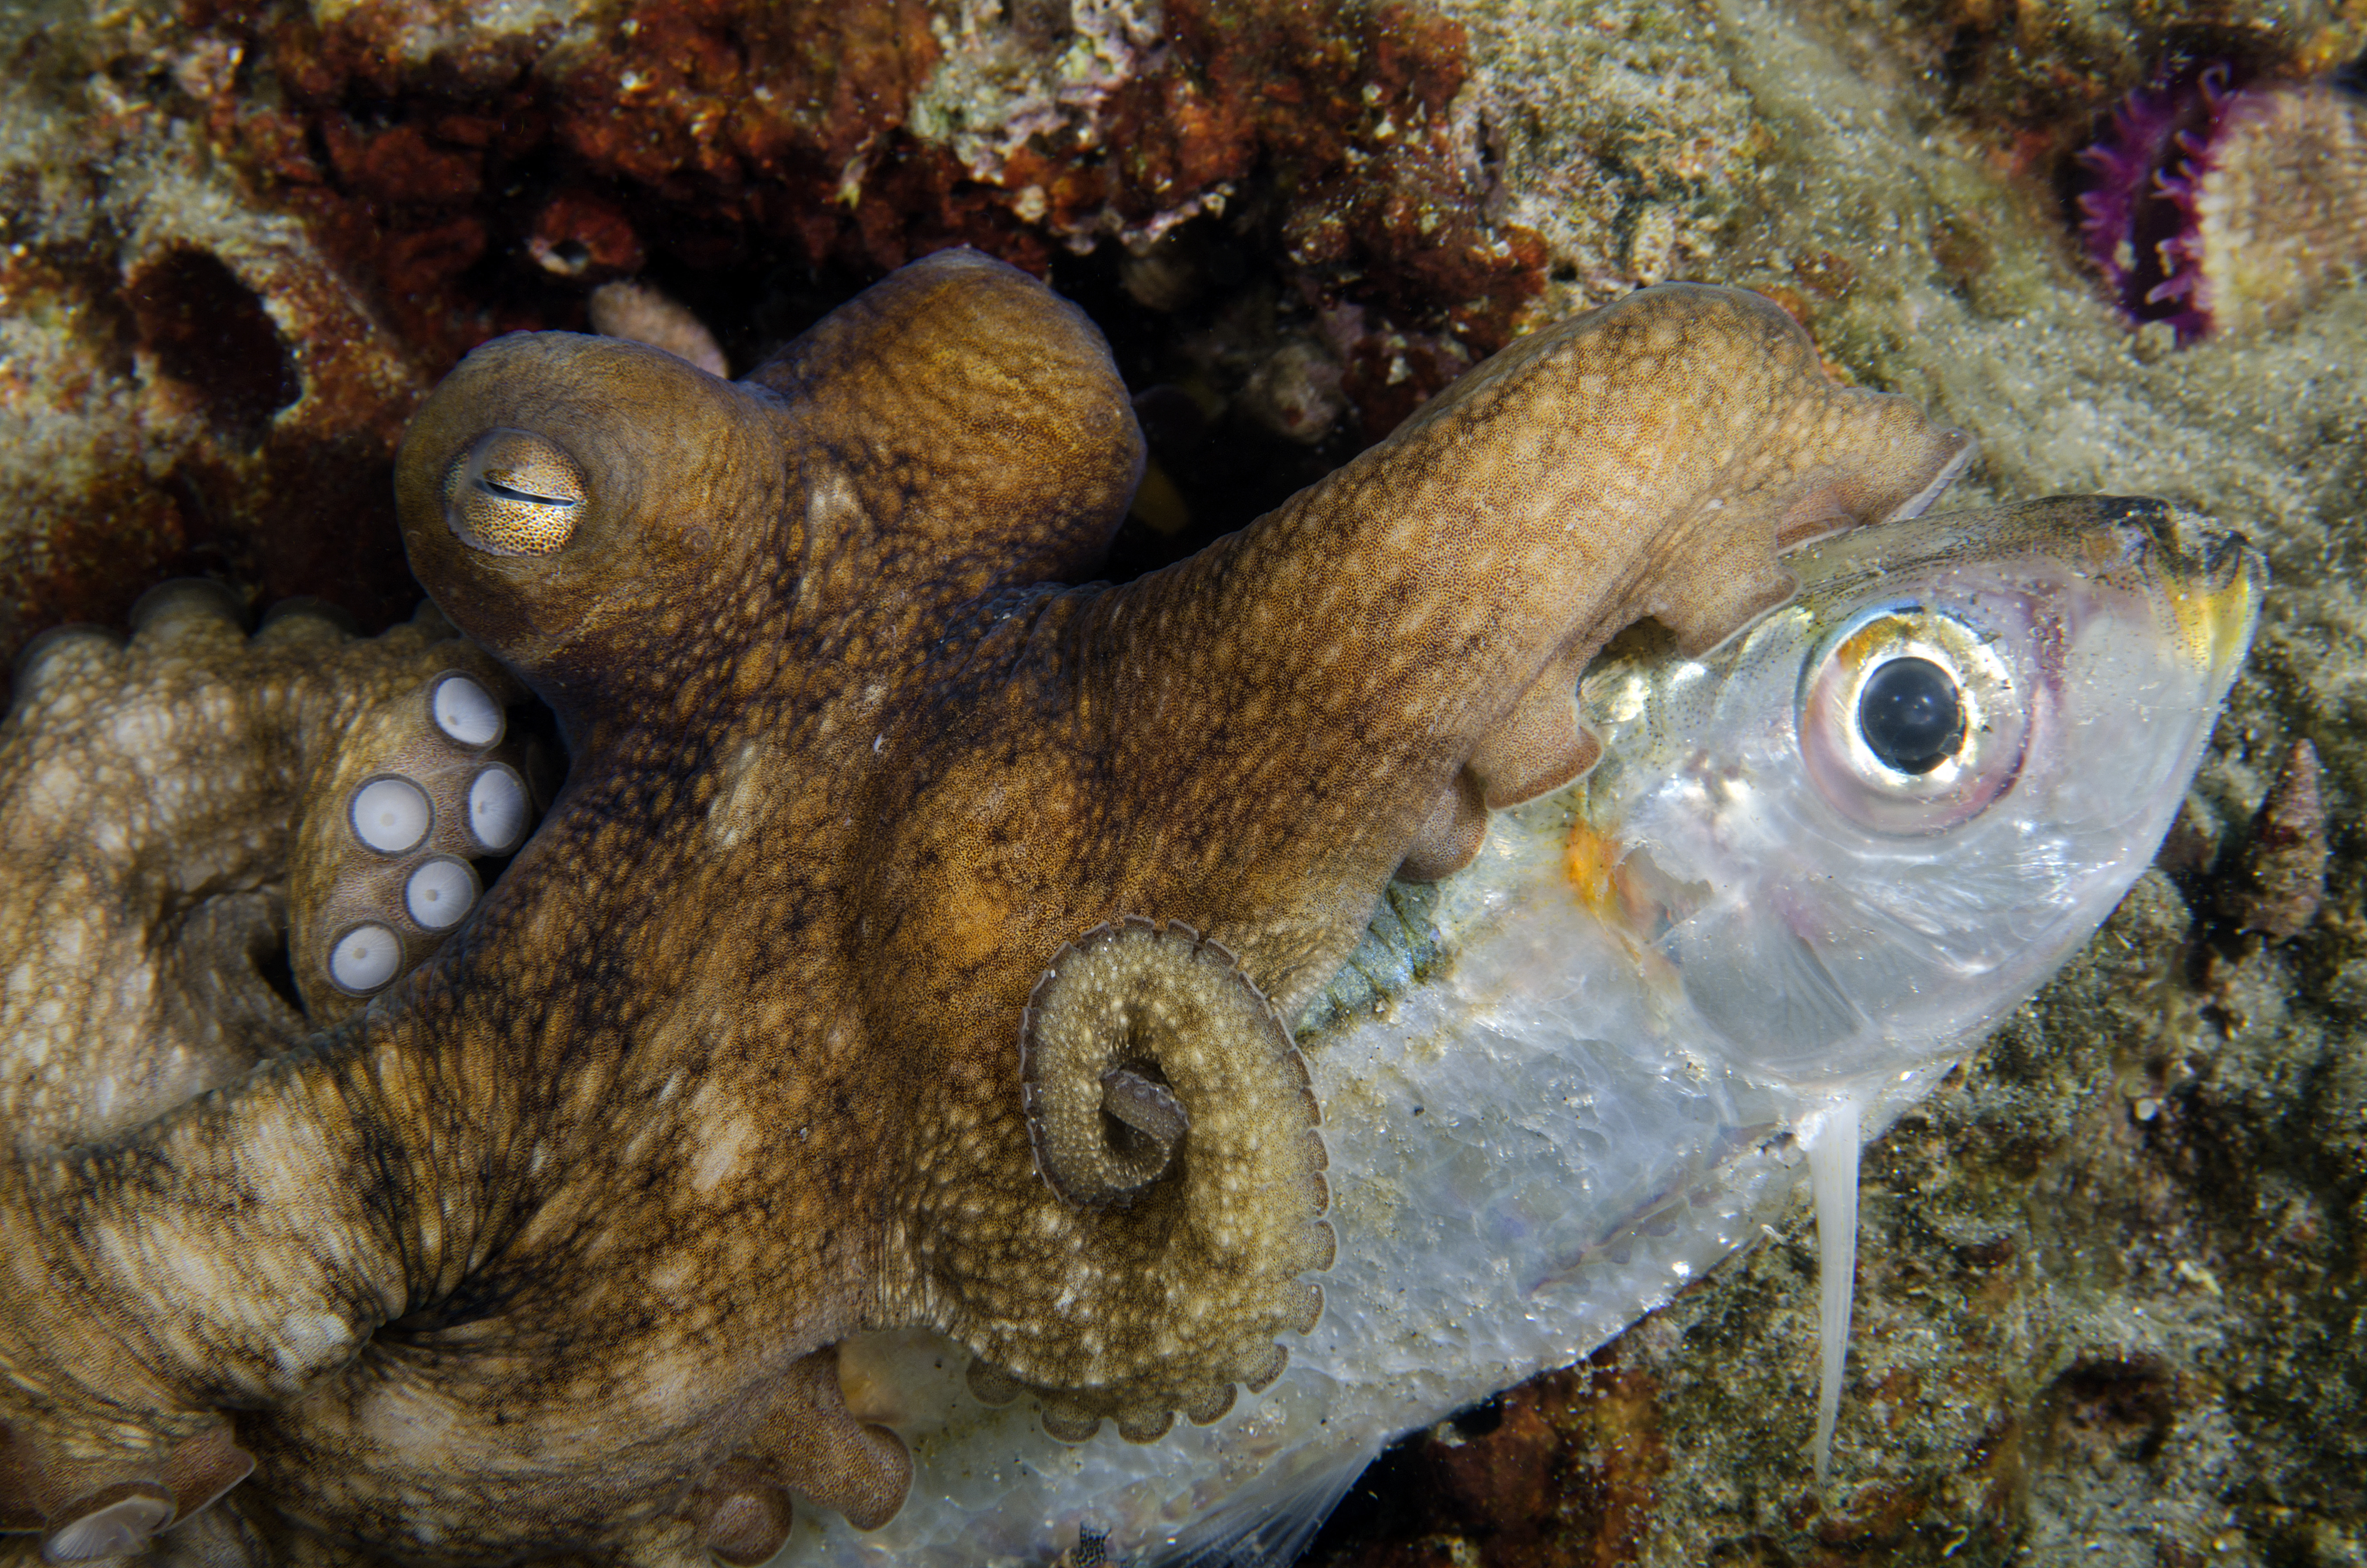 Halakat pofozgató polipokról készült felvétel a Vörös-tengerben